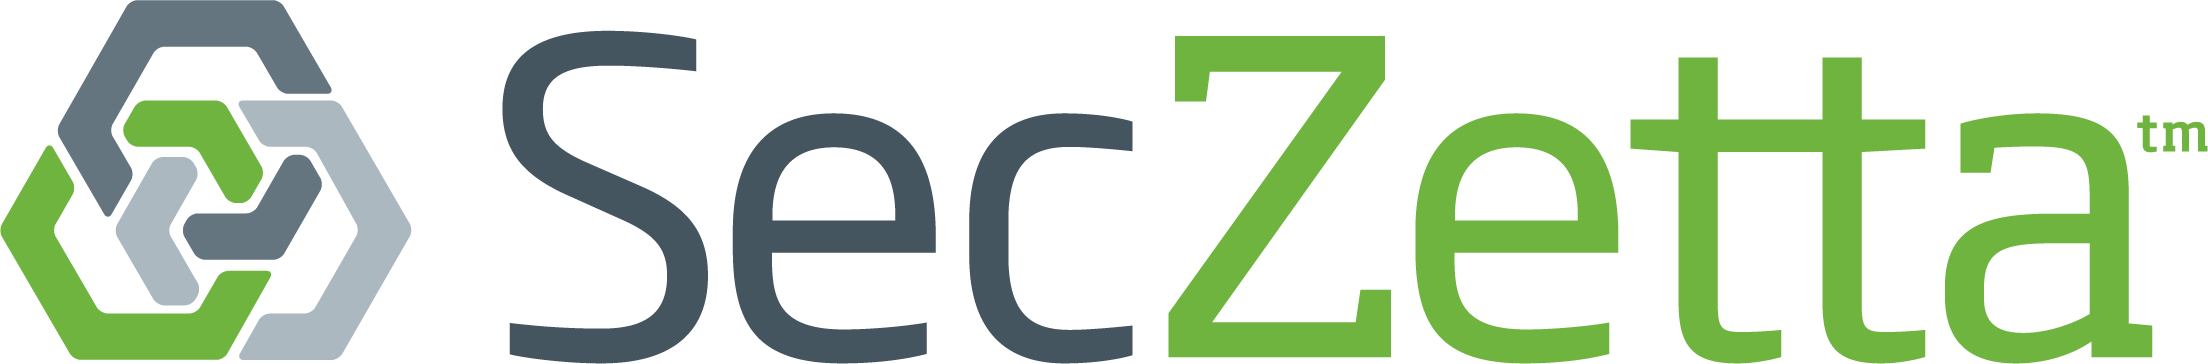 SecZetta_Logo.png